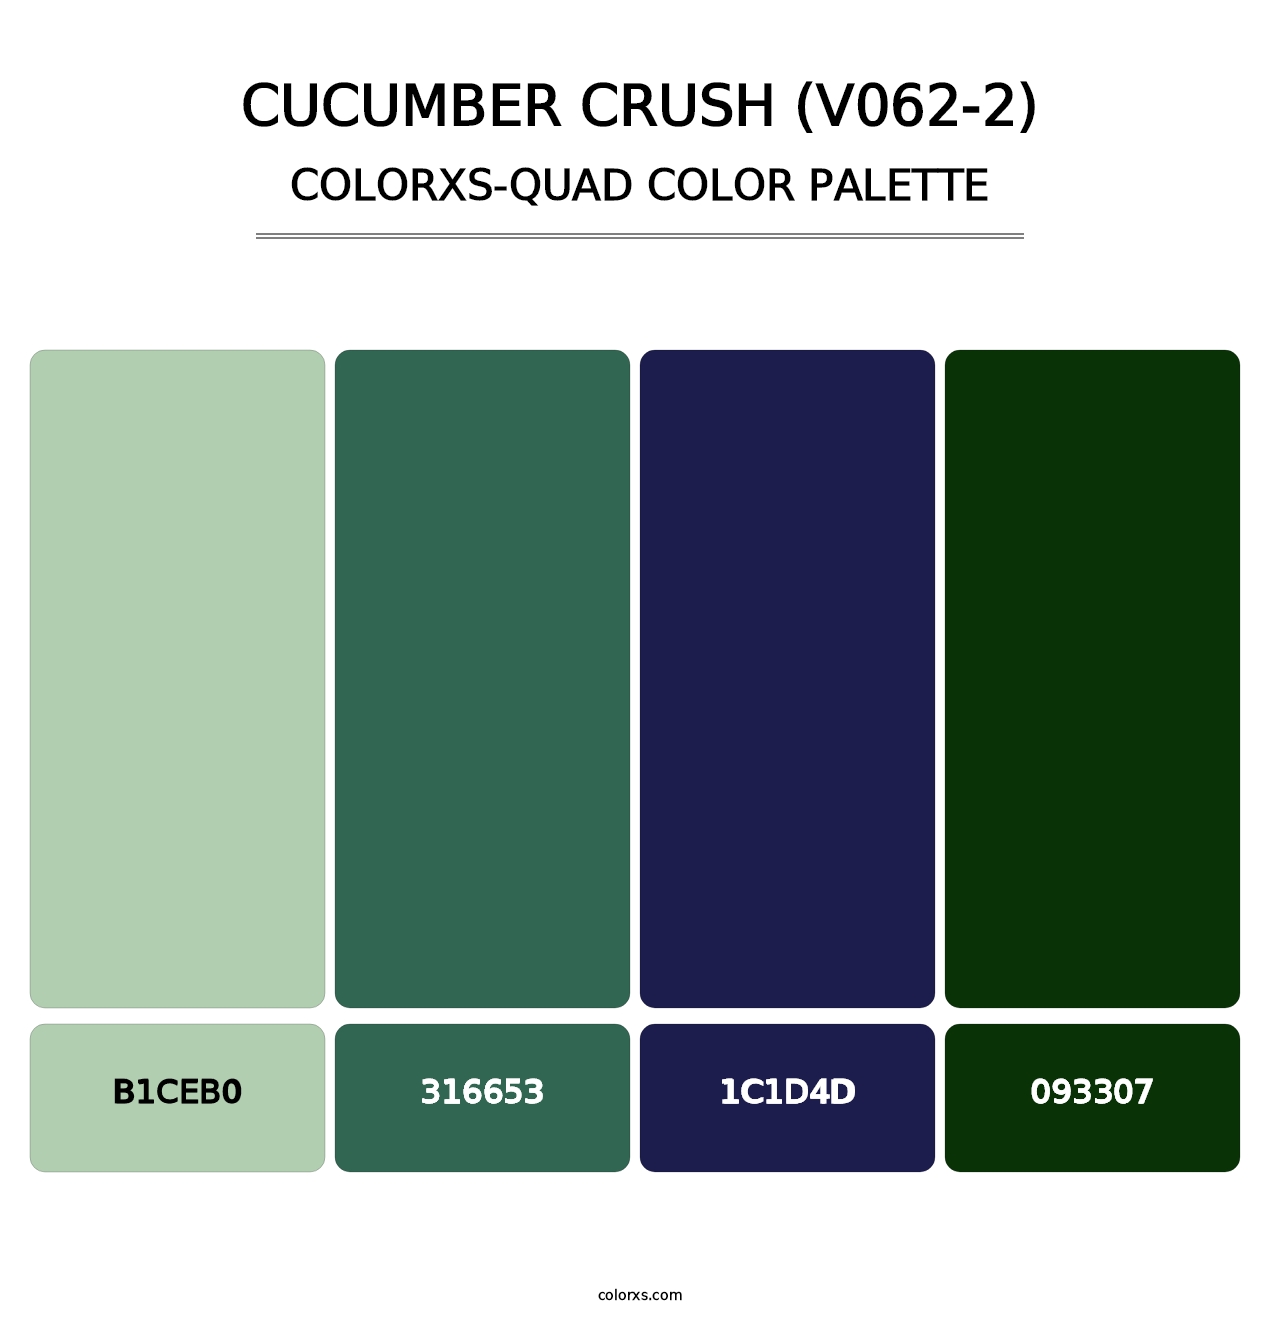 Cucumber Crush (V062-2) - Colorxs Quad Palette